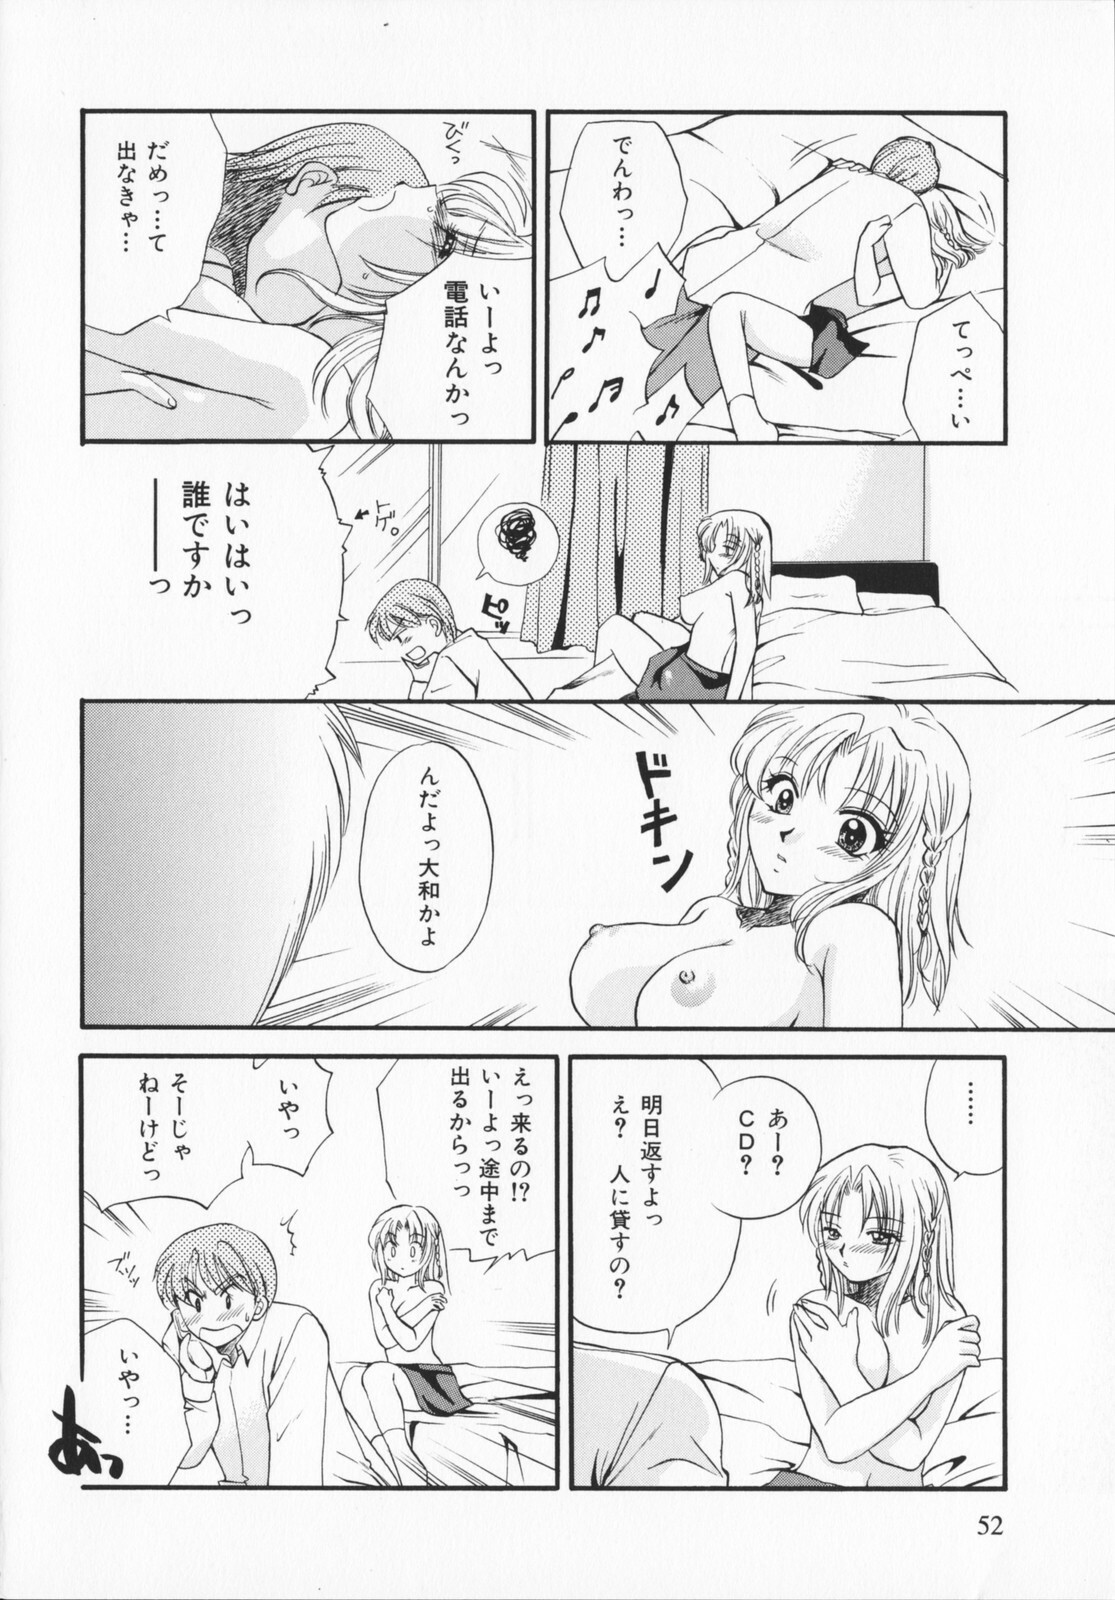 [Ureshino Megumi]Genkaiharetsu (LIMIT EXPLOSION) page 51 full